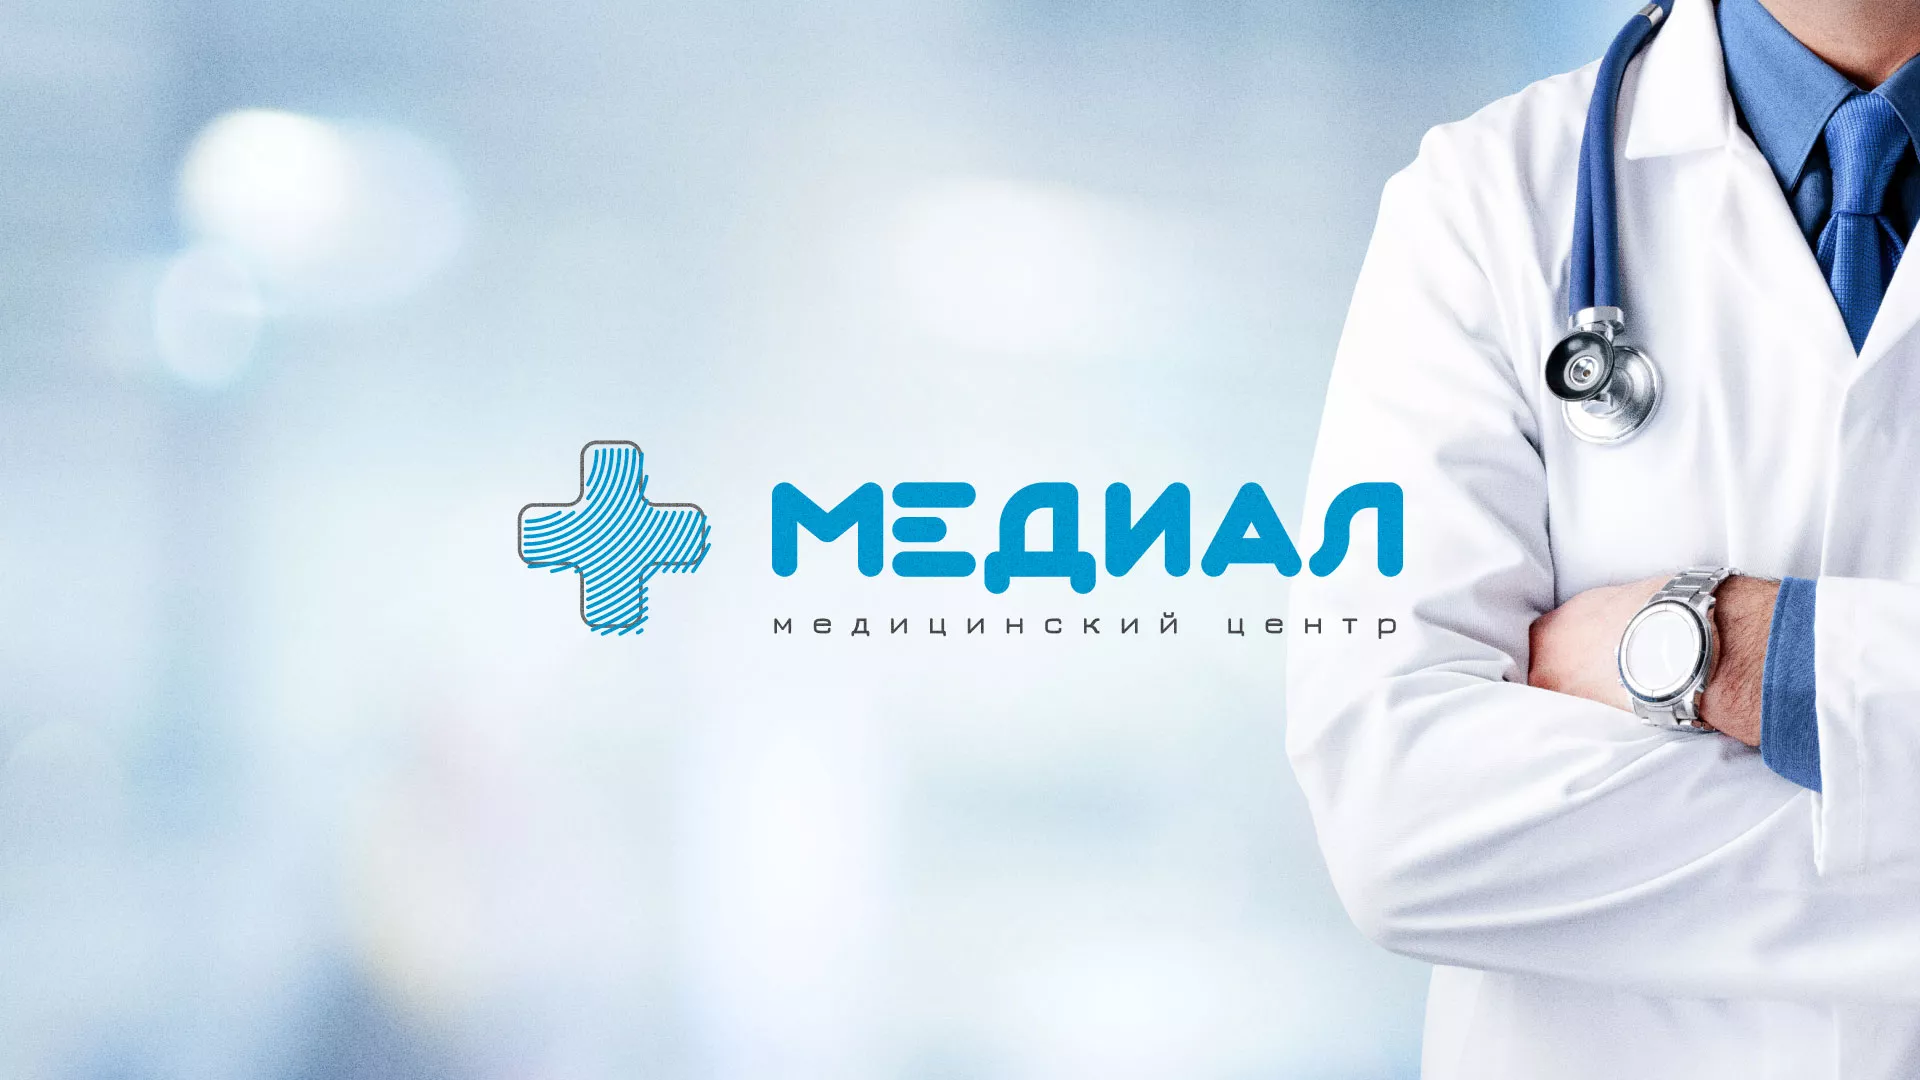 Создание сайта для медицинского центра «Медиал» в Гаджиево